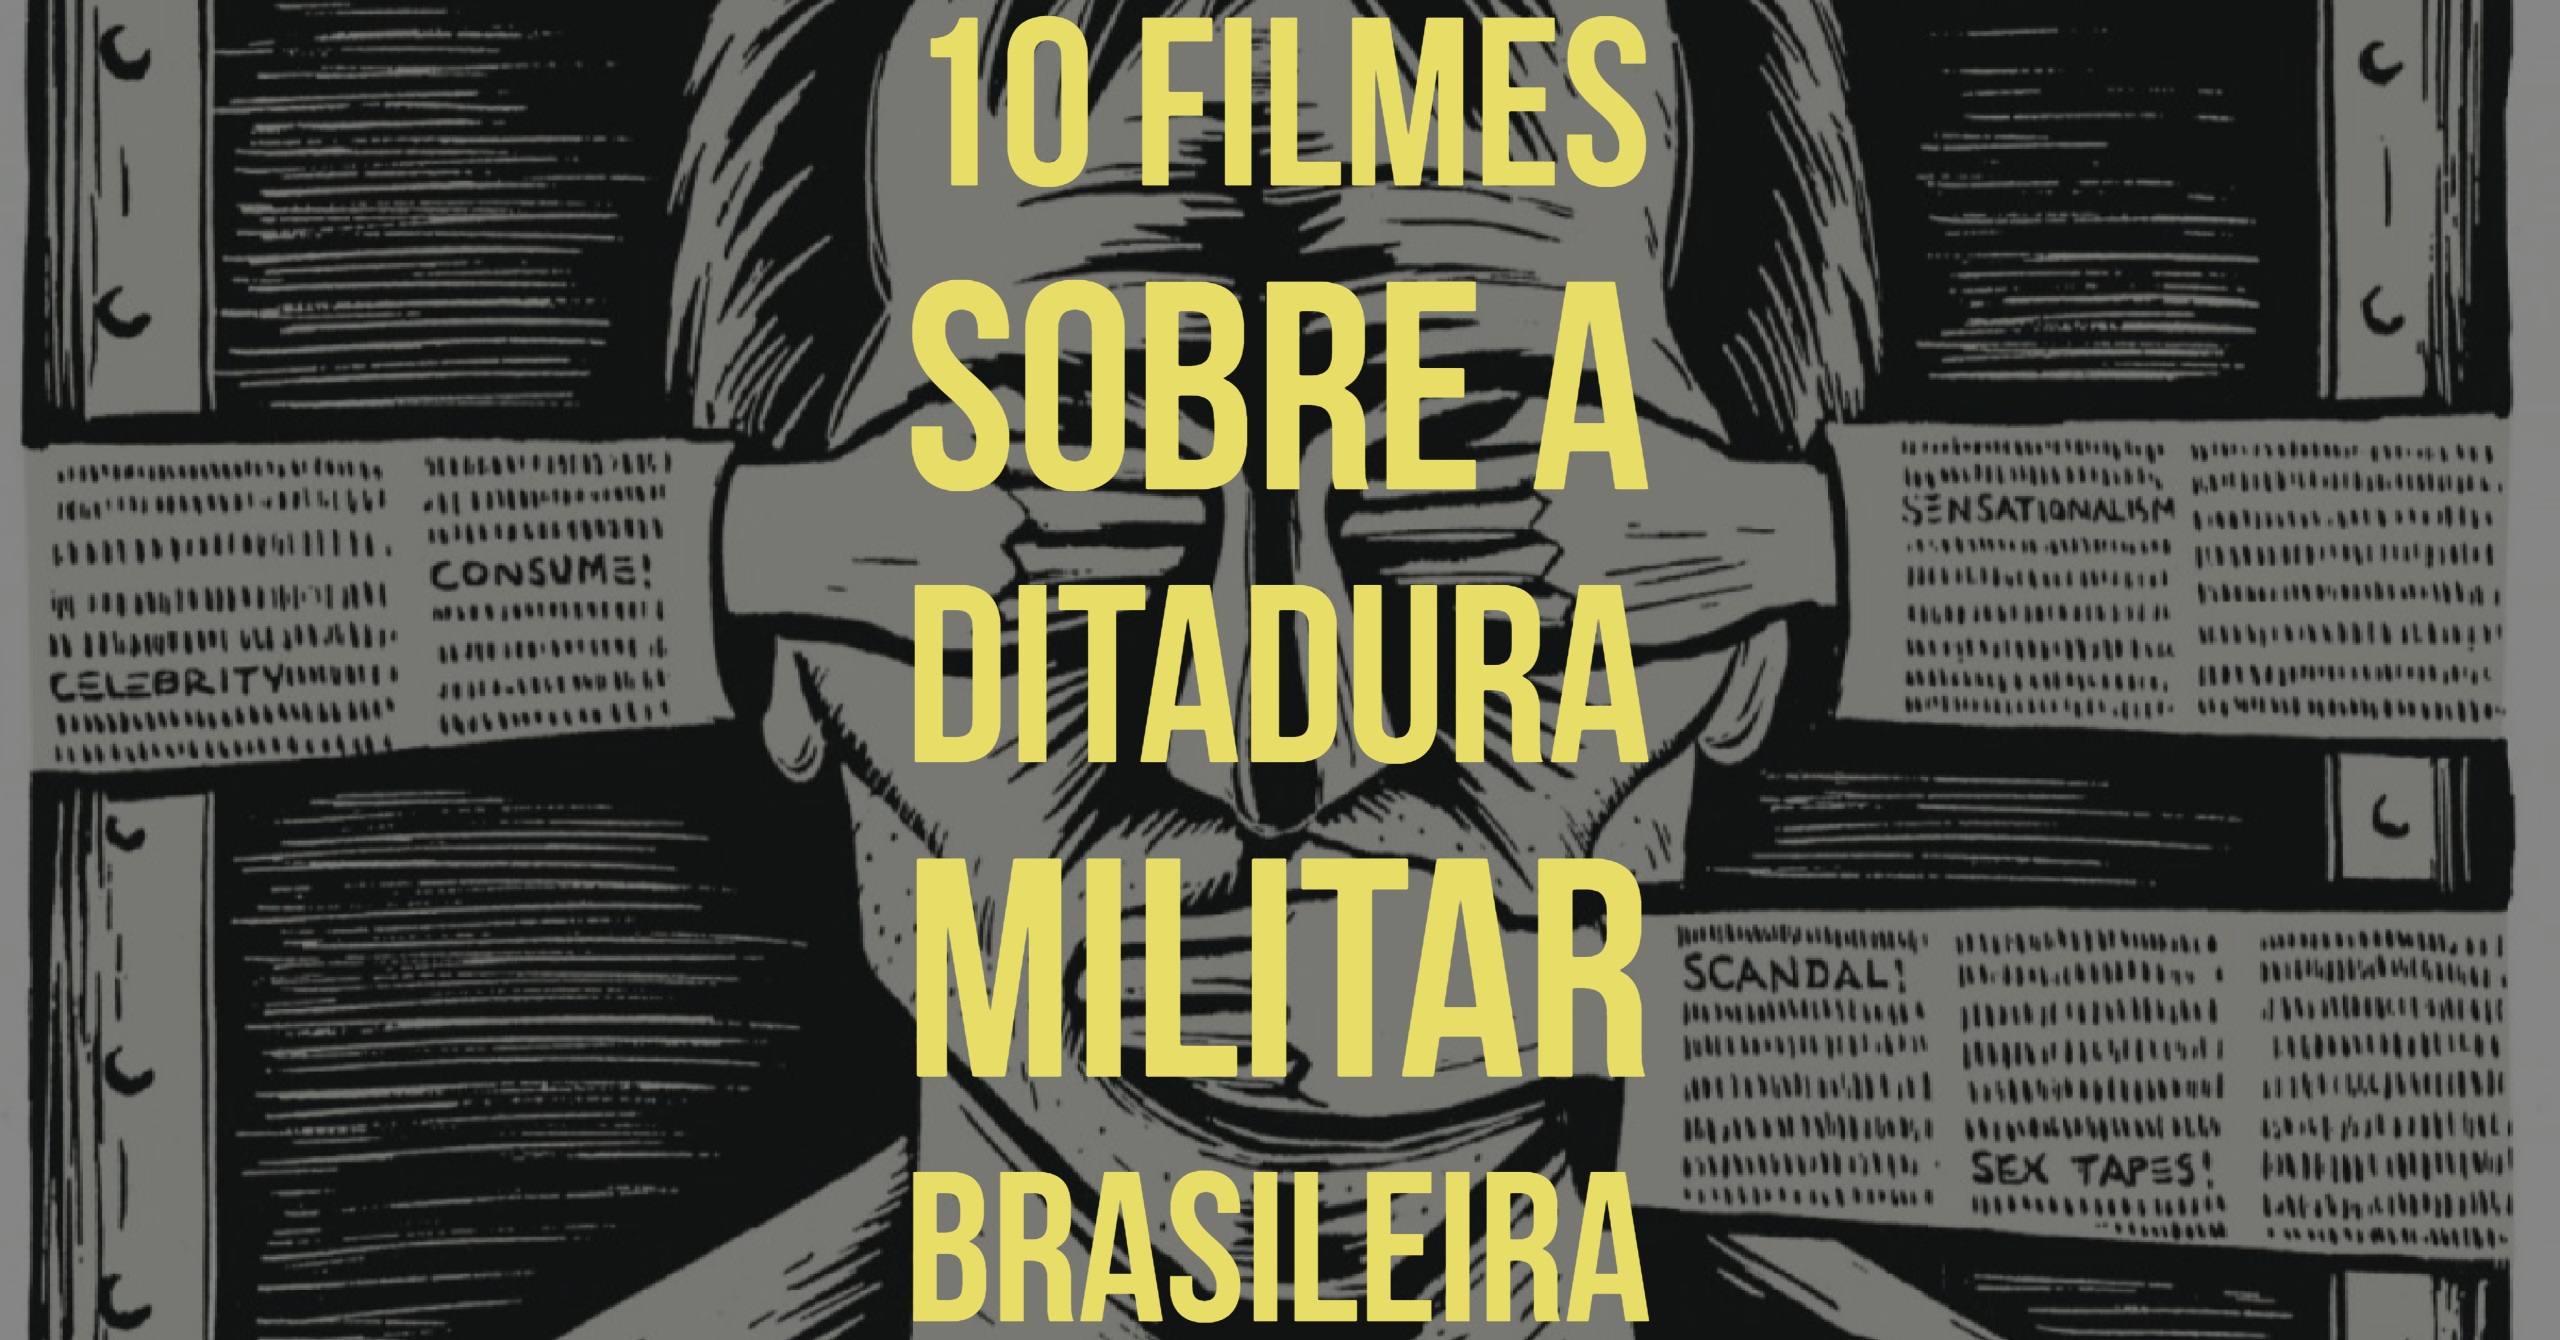 10 Filmes Sobre a Ditadura Militar Brasileira